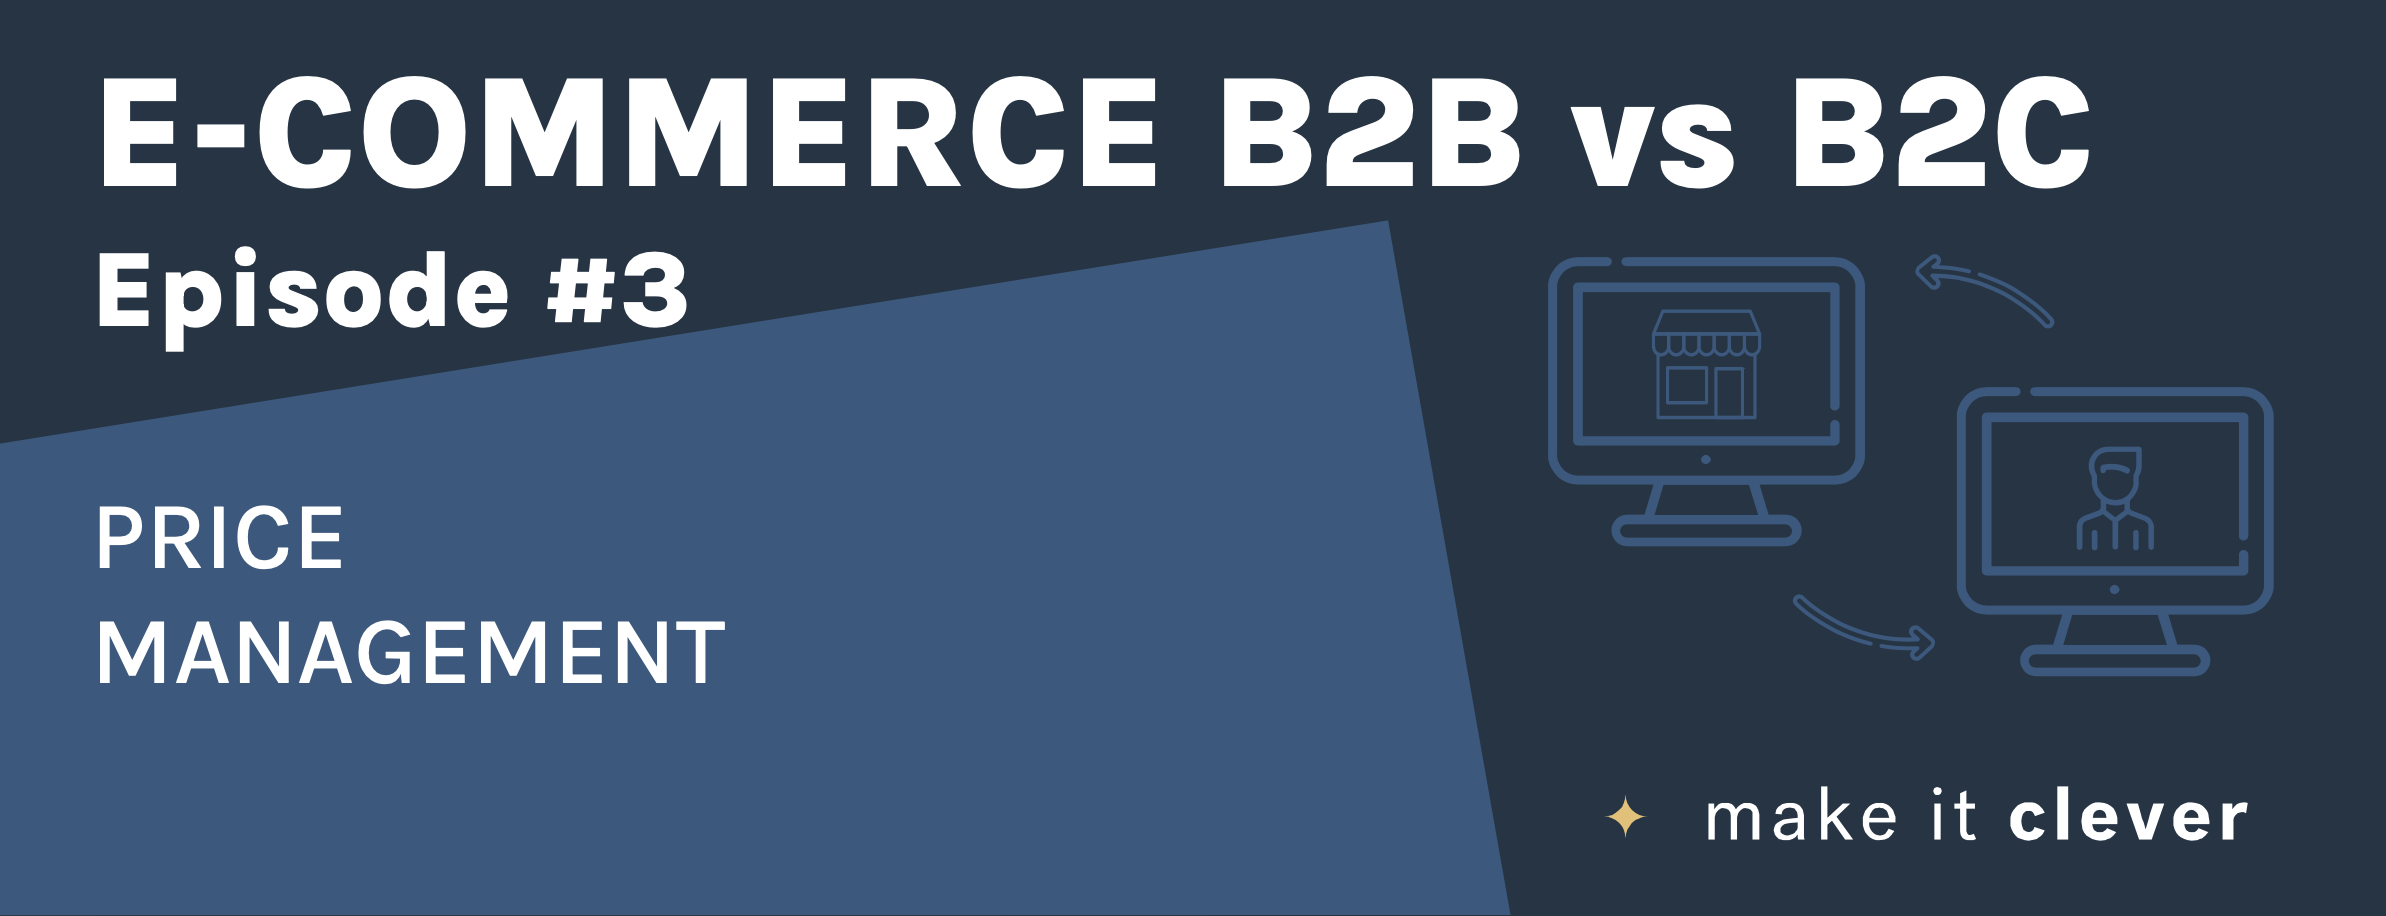 B2B versus B2C issues #3 : Price management